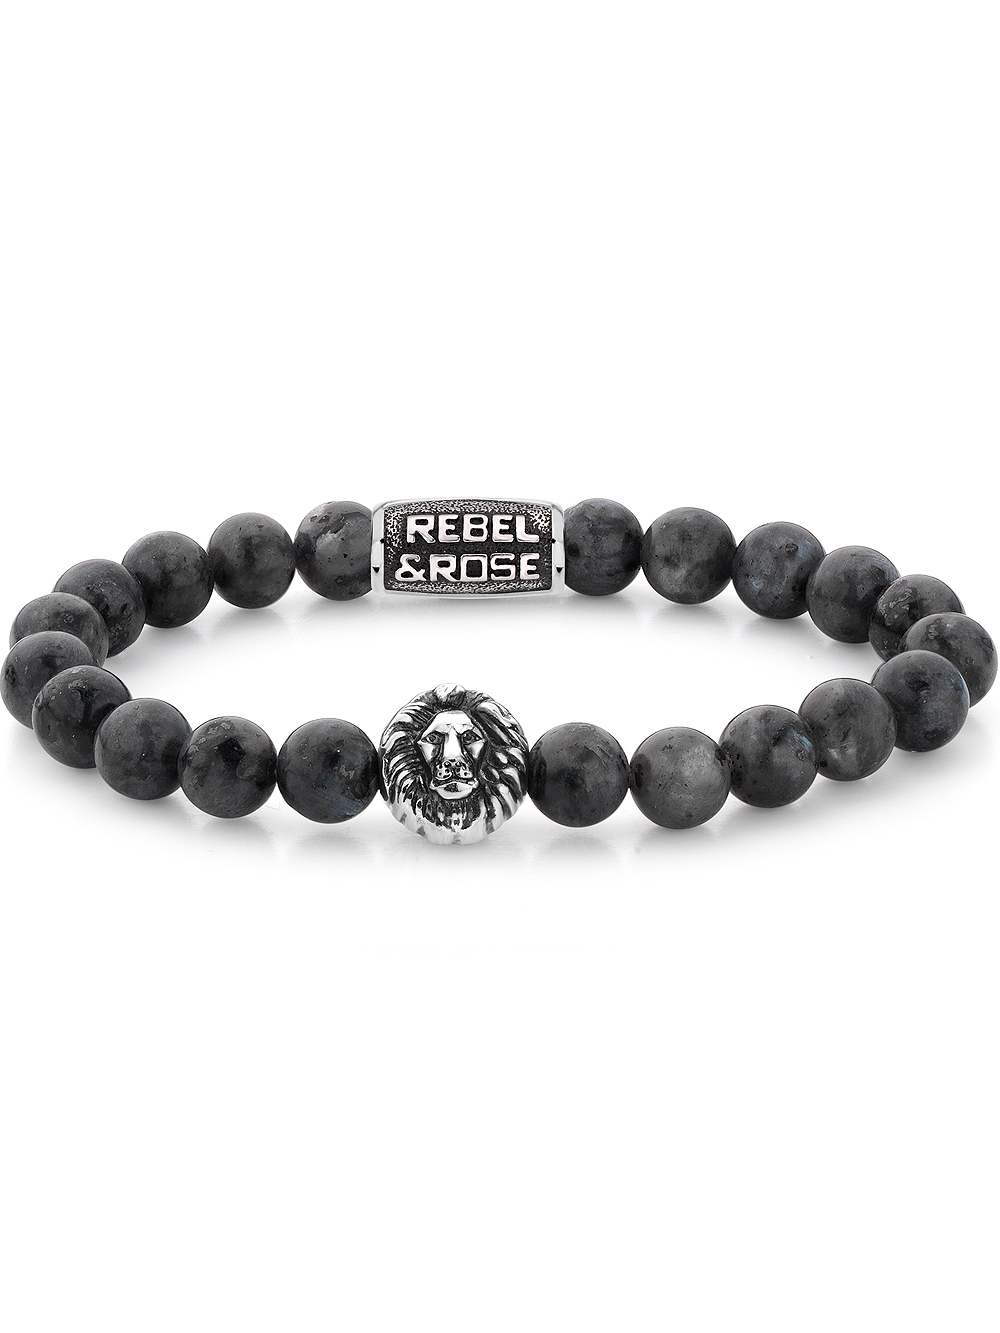 Rebel & Rose Bracelet Grey Seduction RR-8L025-S-L mens